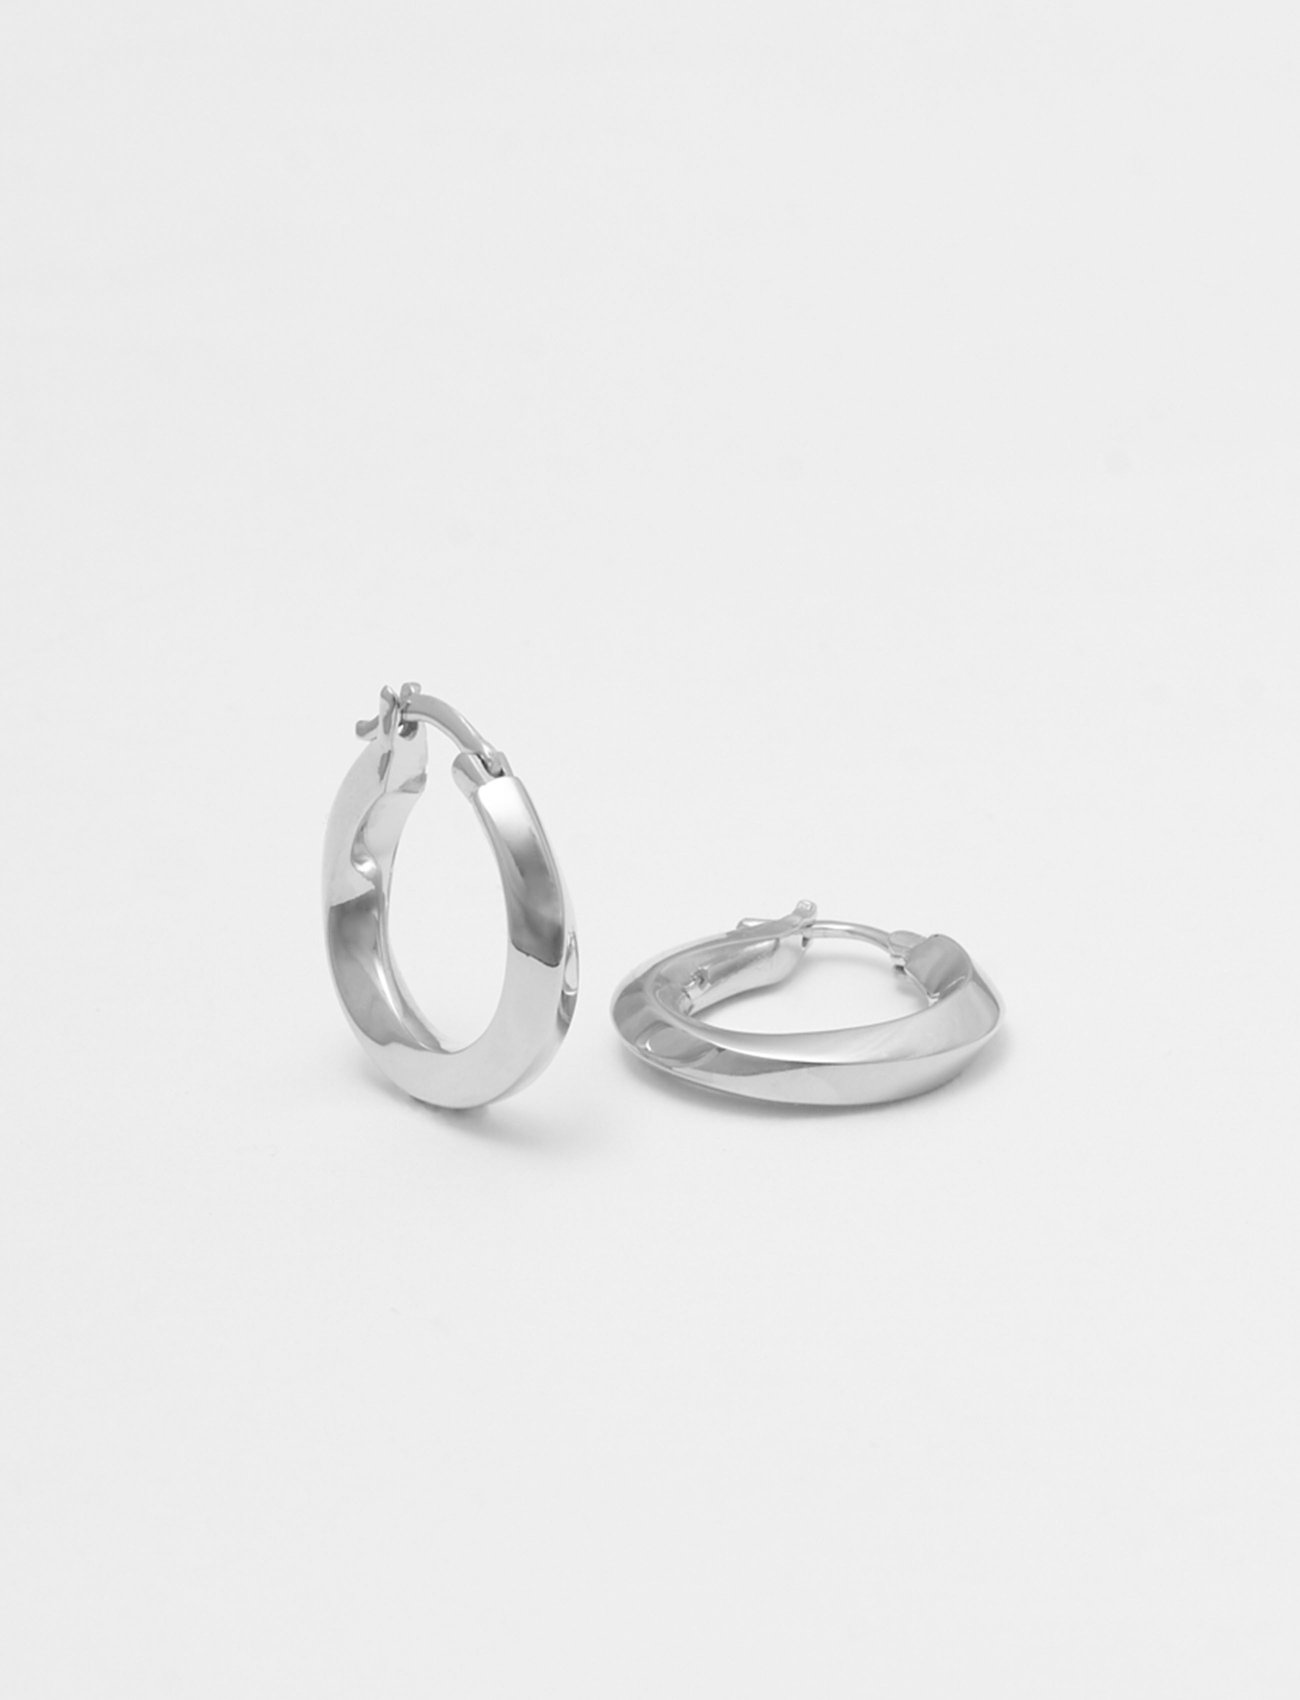 Small Swirl Hoops Accessories Jewellery Earrings Hoops Silver Blue Billie